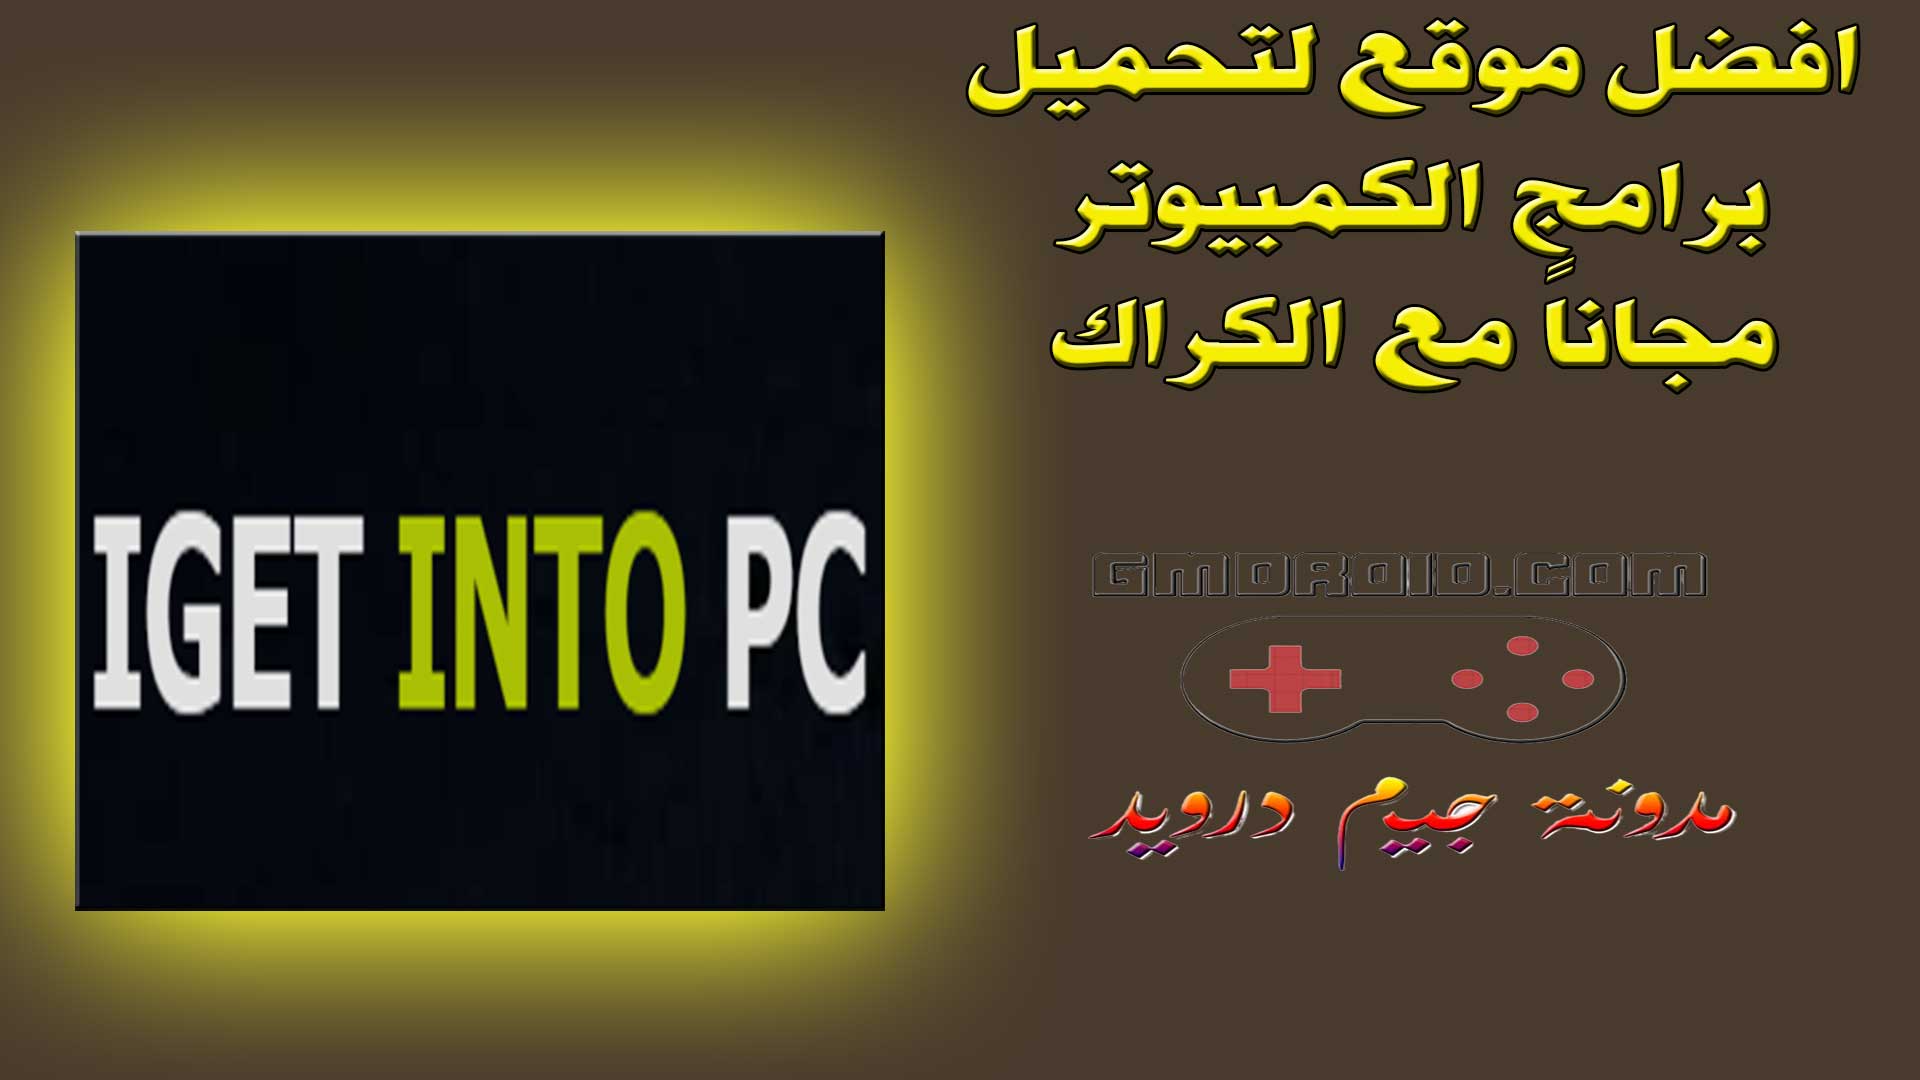 موقع IGetIntoPC - افضل موقع لتحميل برامج الكمبيوتر مجاناً مع الكراك